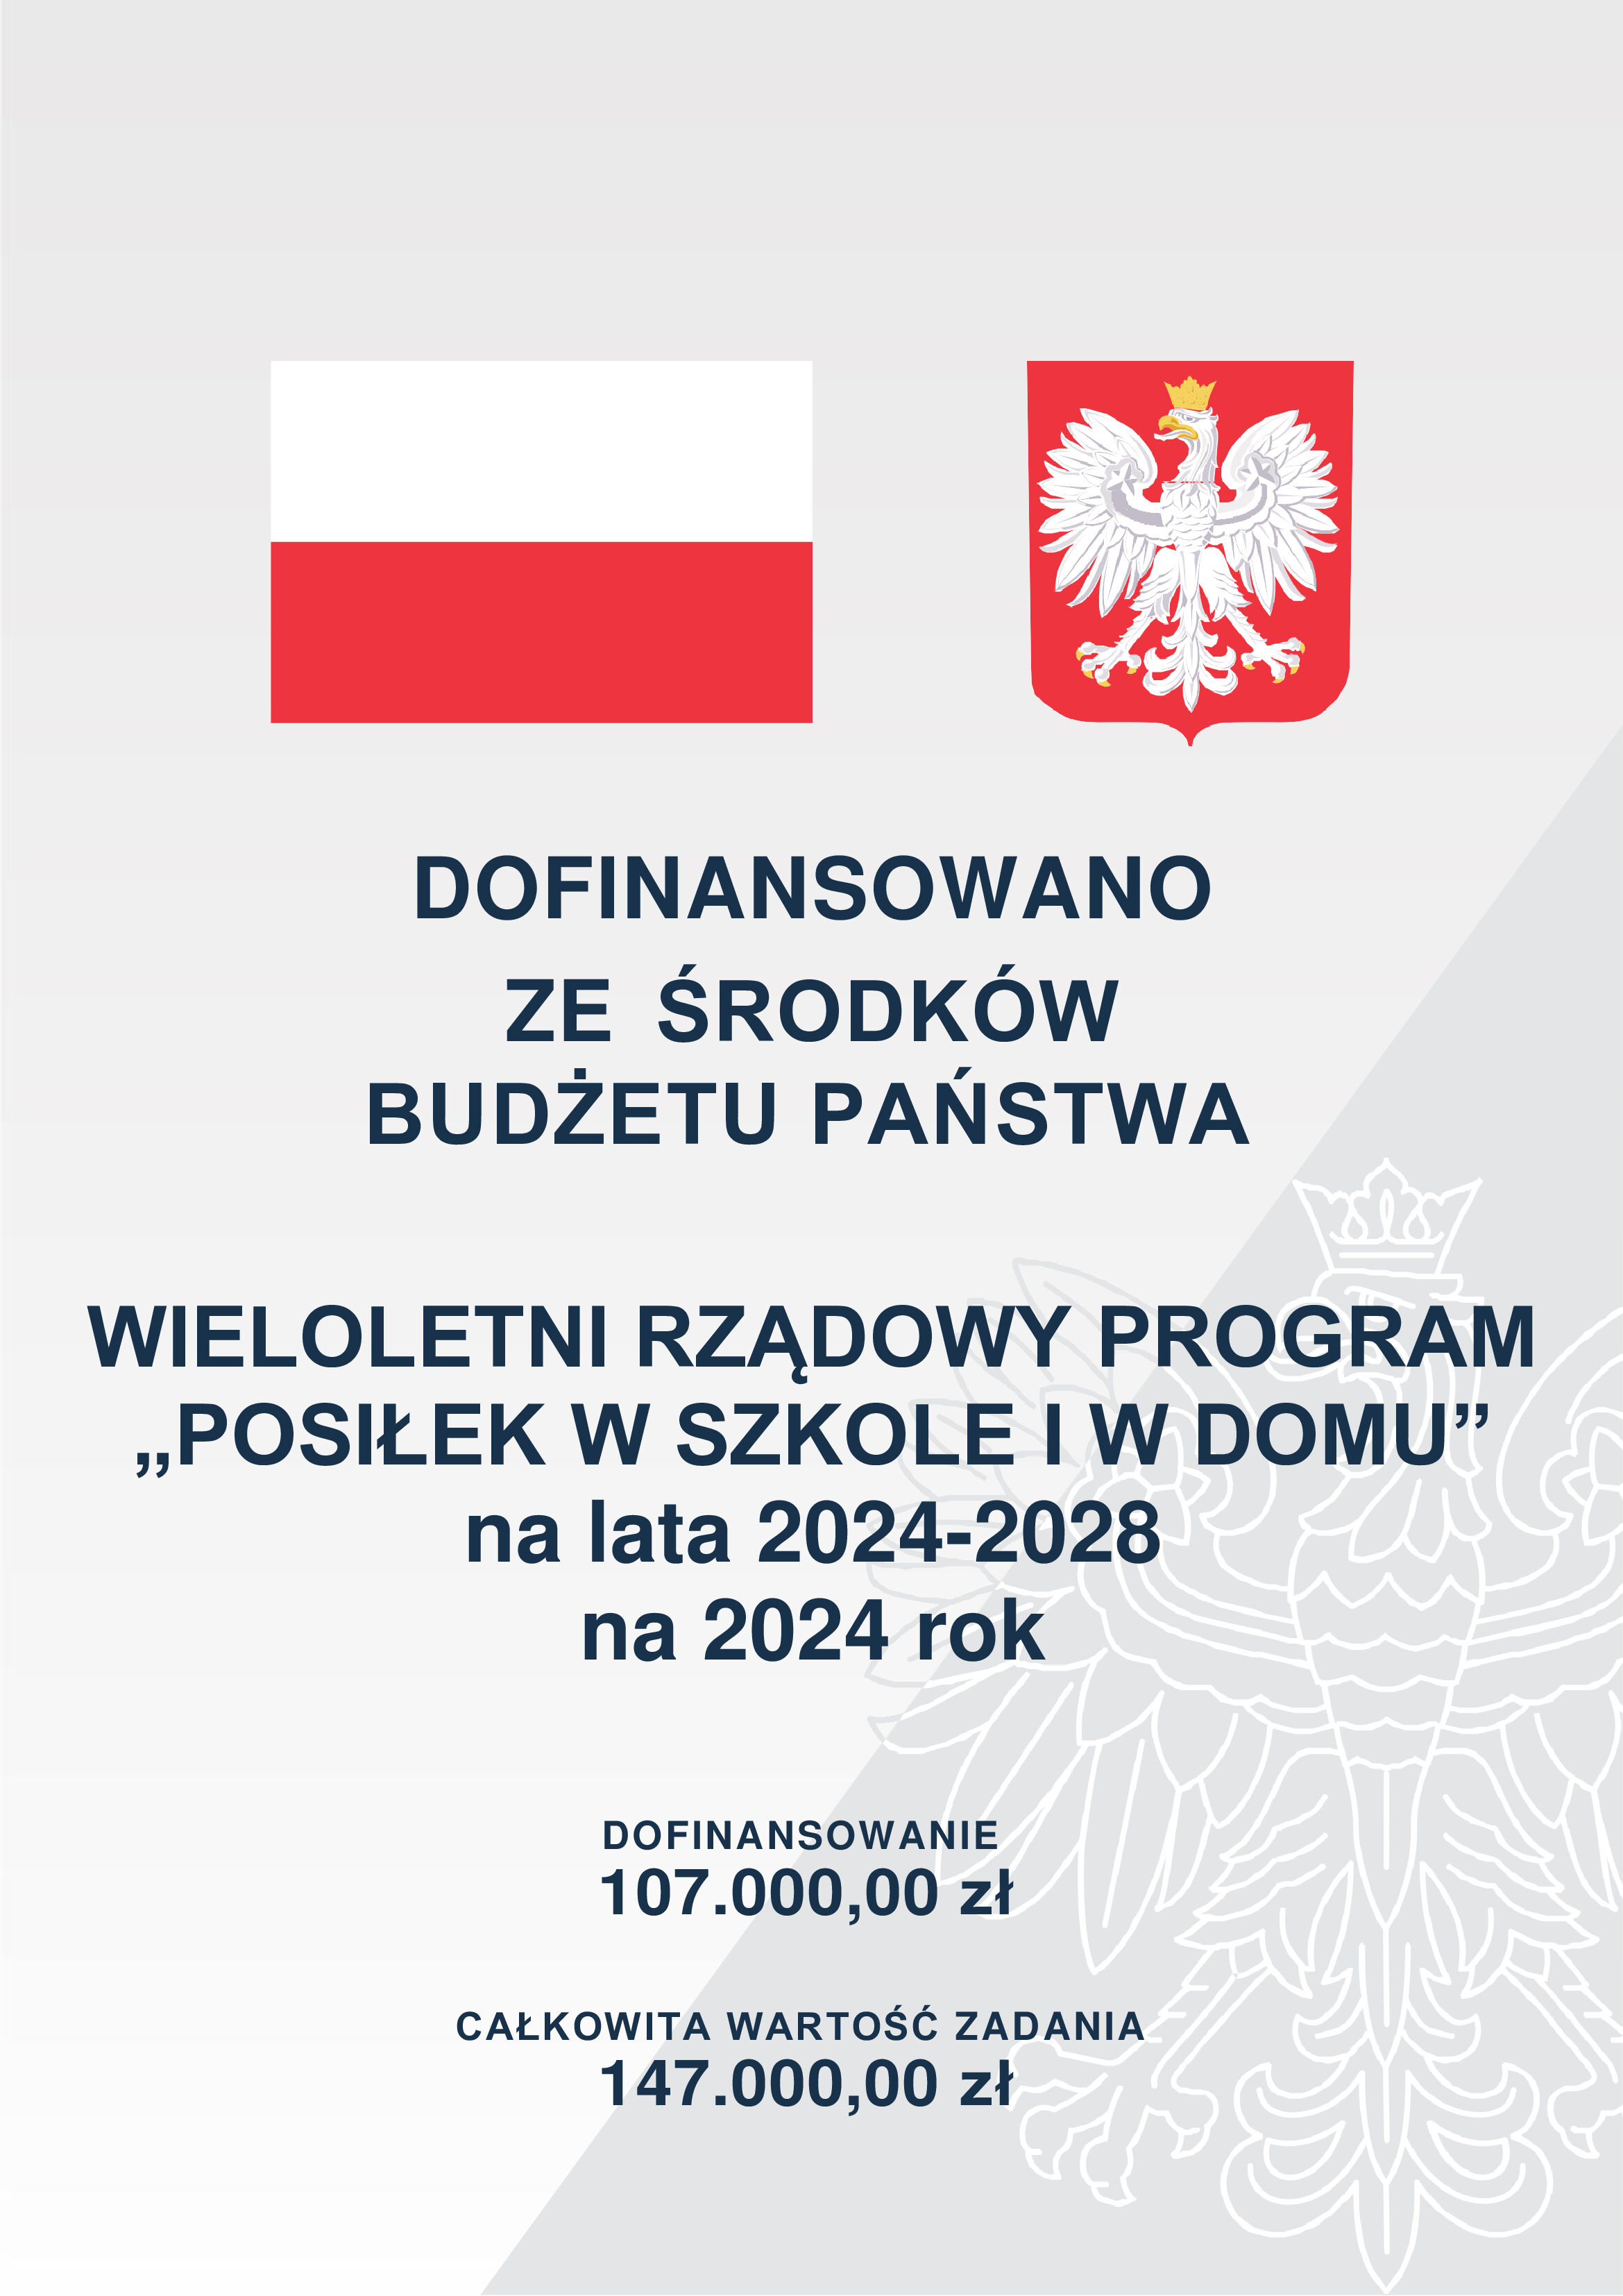 Grafika informacyjna z polskimi symbolami narodowymi - flagą i godłem, ogłaszająca dofinansowanie programu "Posiłek w szkole i w domu" na lata 2024-2028, z kwotami dofinansowania.